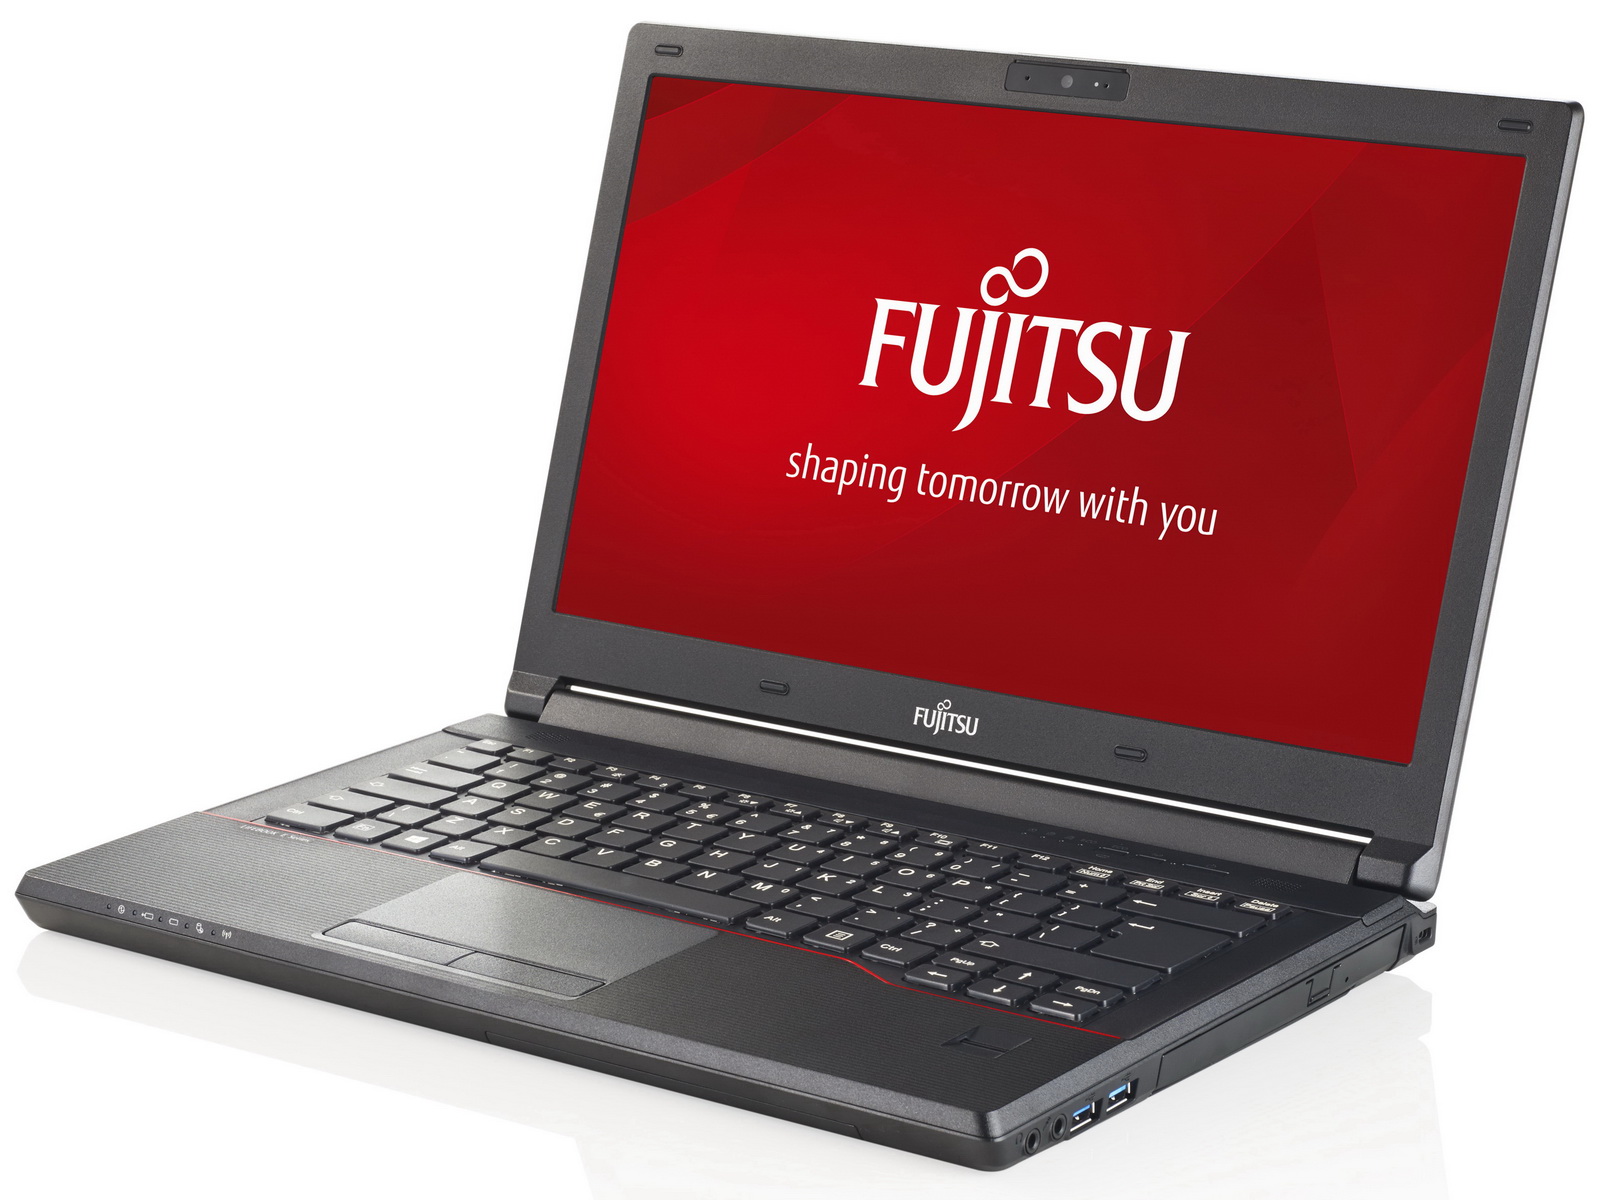 Fujitsu Lifebook E544 Notebook Review - NotebookCheck.net Reviews